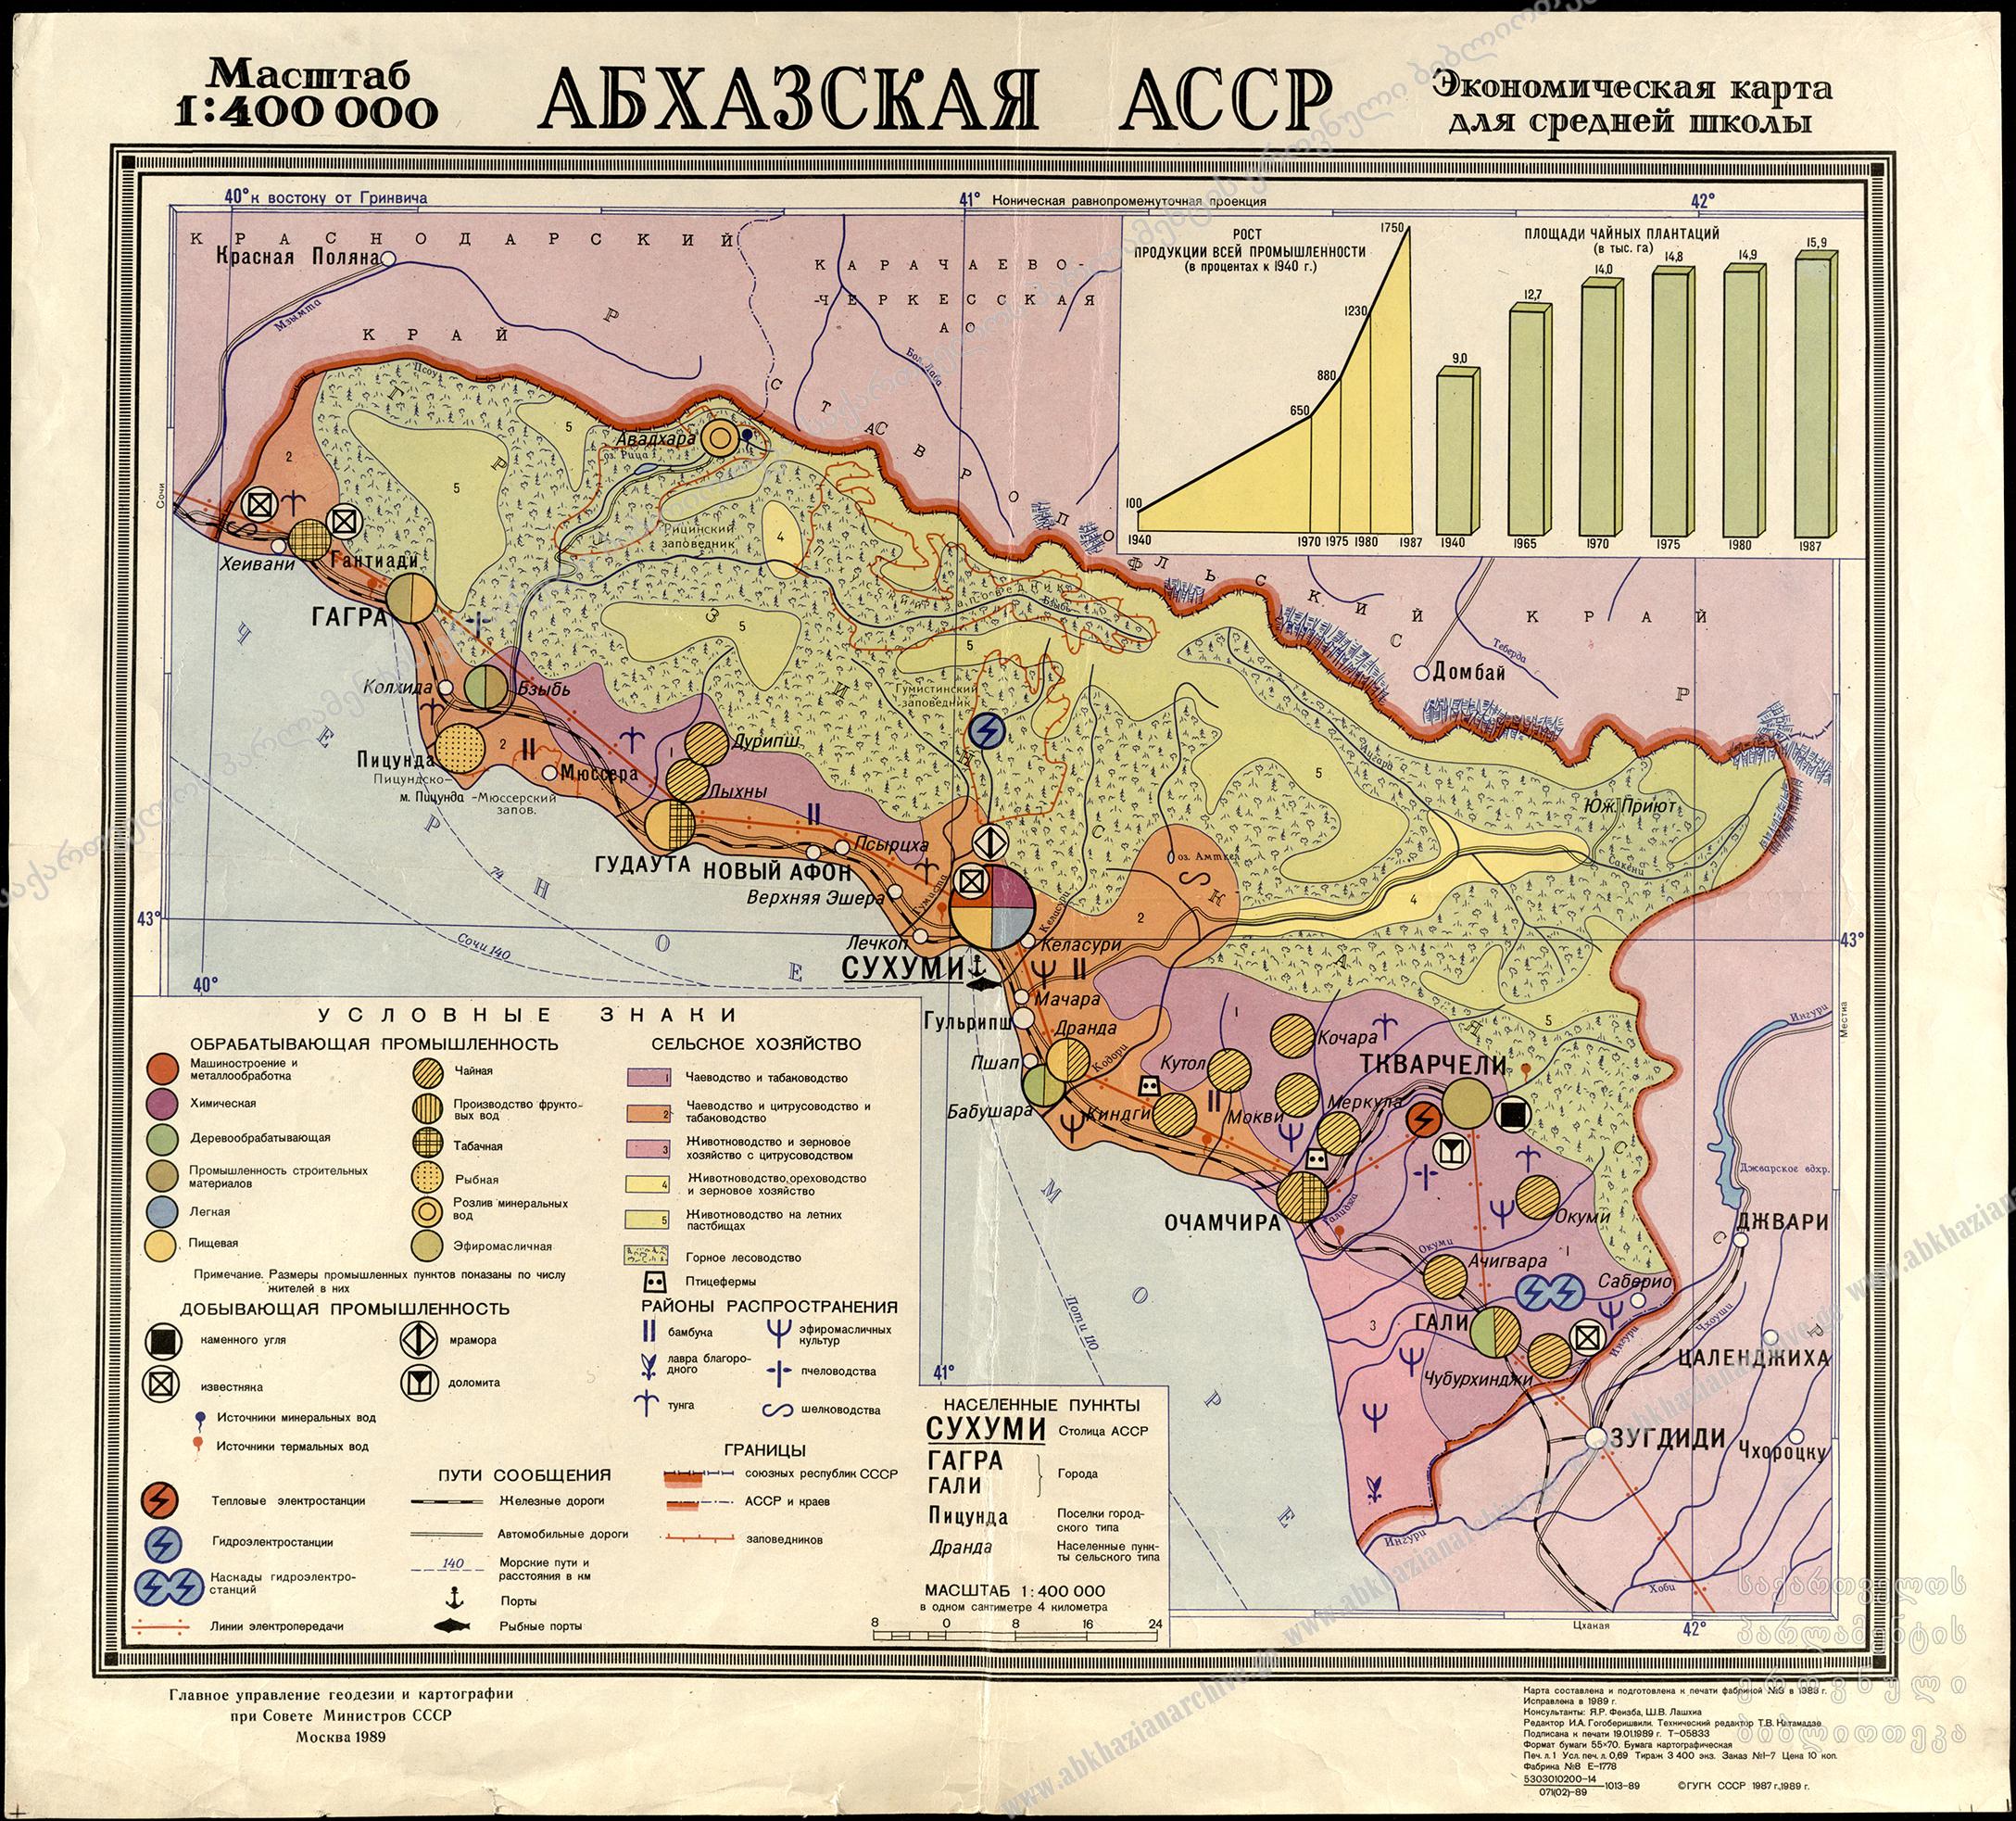 Автомобильная карта Абхазии подробная. Карта Абхазии 19 век. Этнографическая карта Абхазии. Карта абхазской АССР.